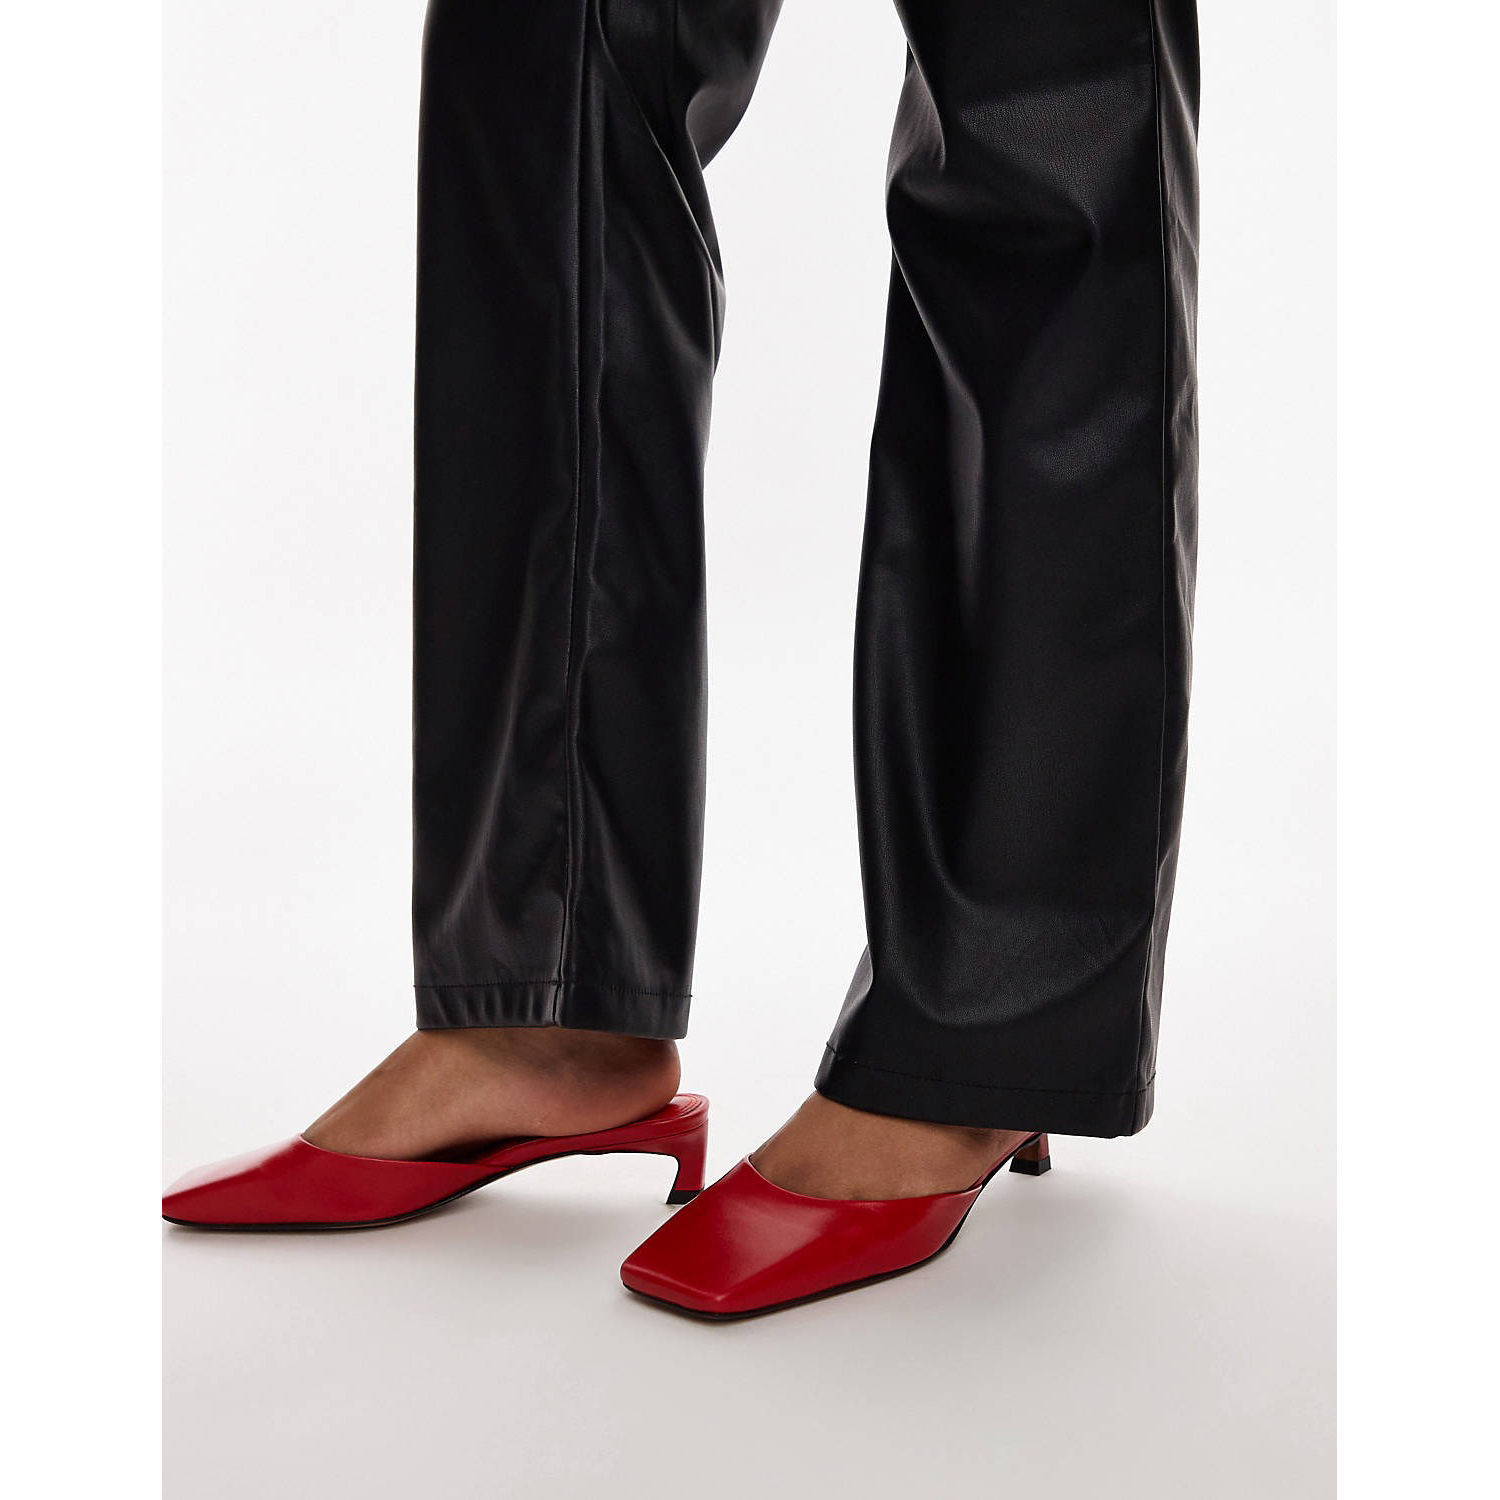 Мюли Topshop Audrey Premium Leather Mid Heeled Square Toe, красный мужские кожаные лоферы с квадратным носком на квадратном каблуке